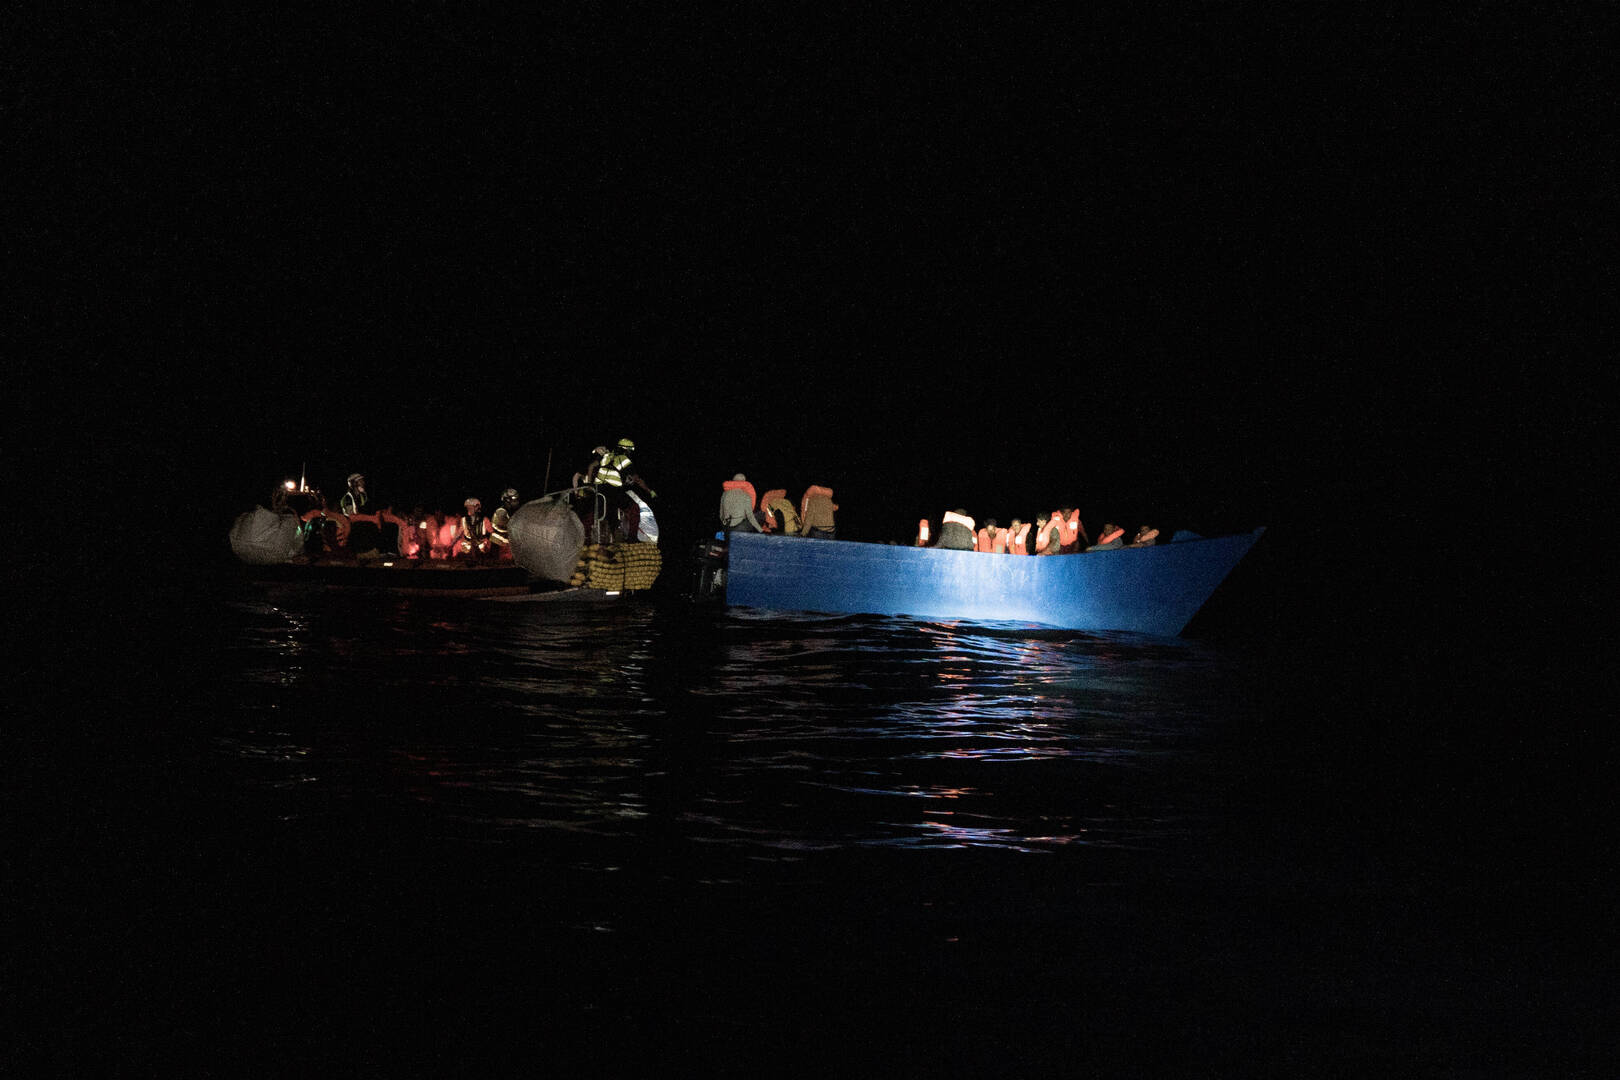 المفوضية الأوروبية: إنقاذ المهاجرين في البحر واجب أخلاقي وقانوني